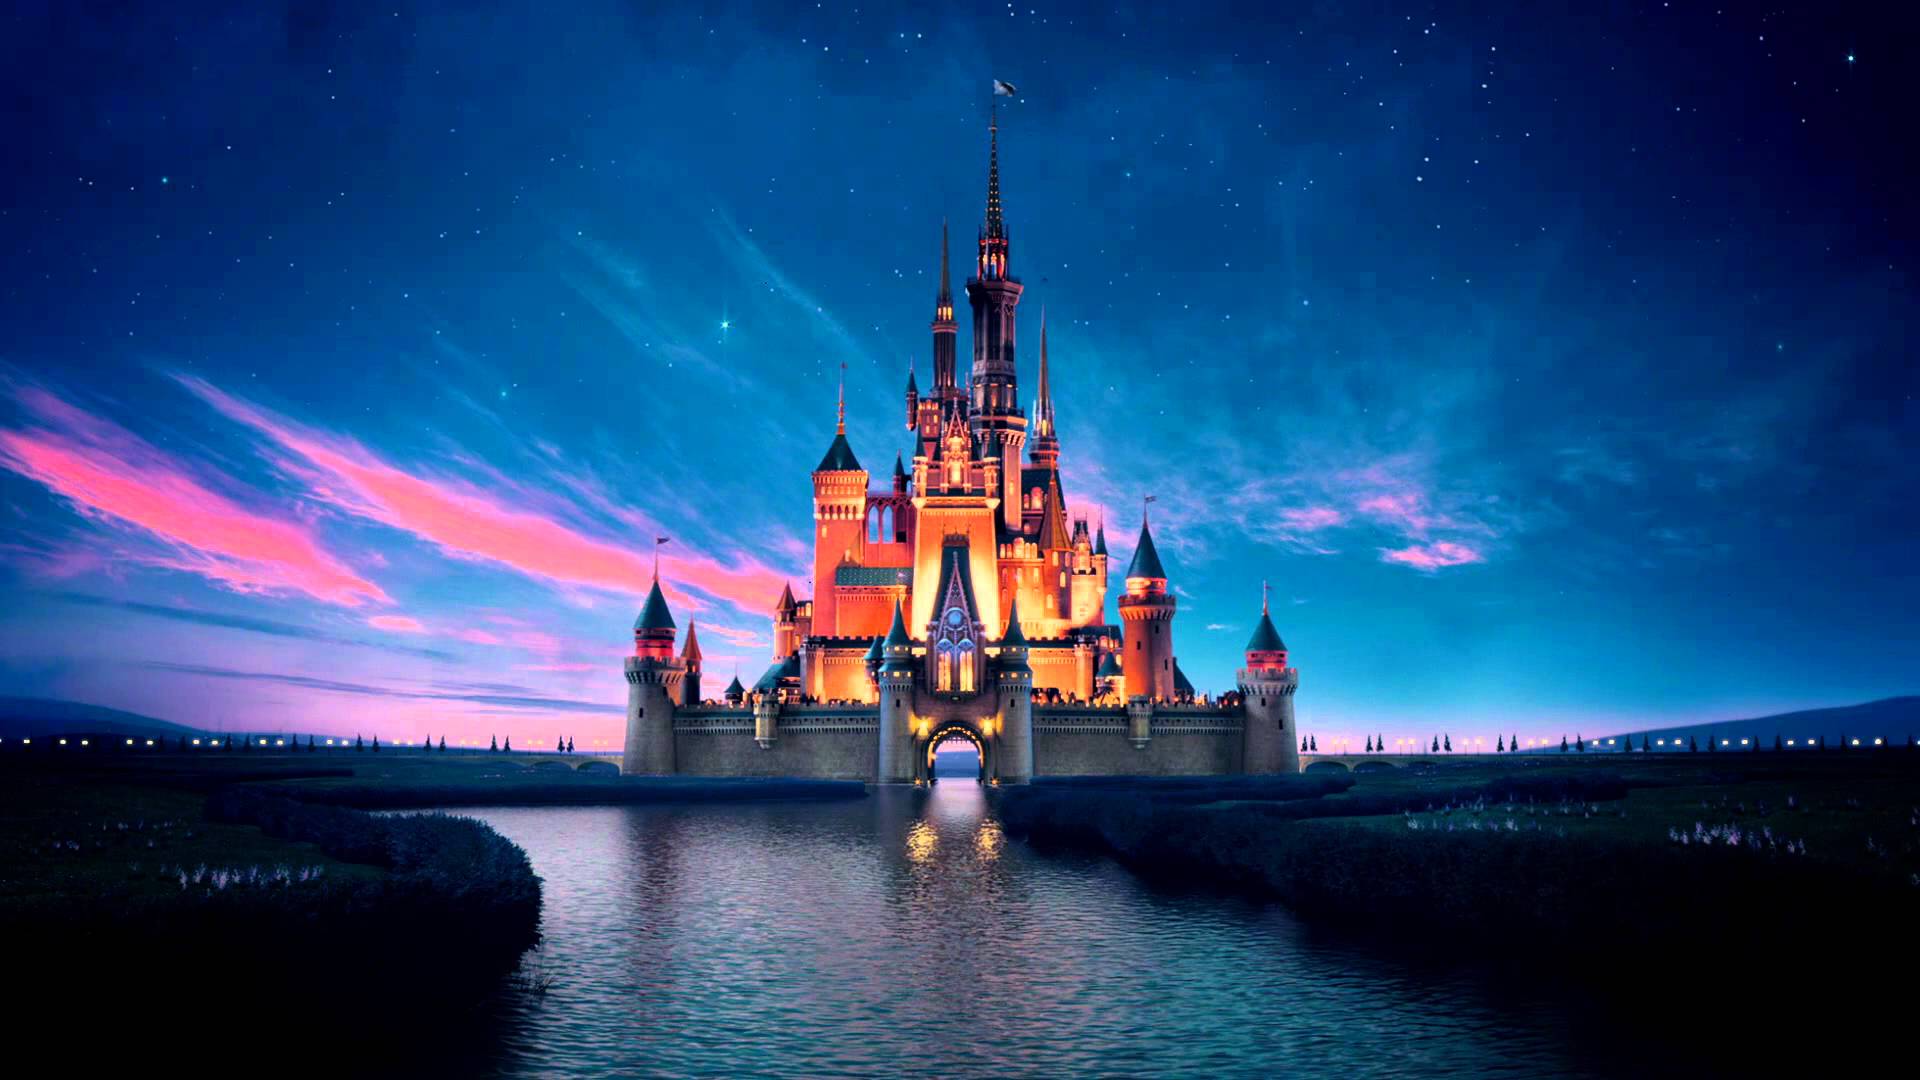 Wallpaper For > Disney Castle Background Tumblr